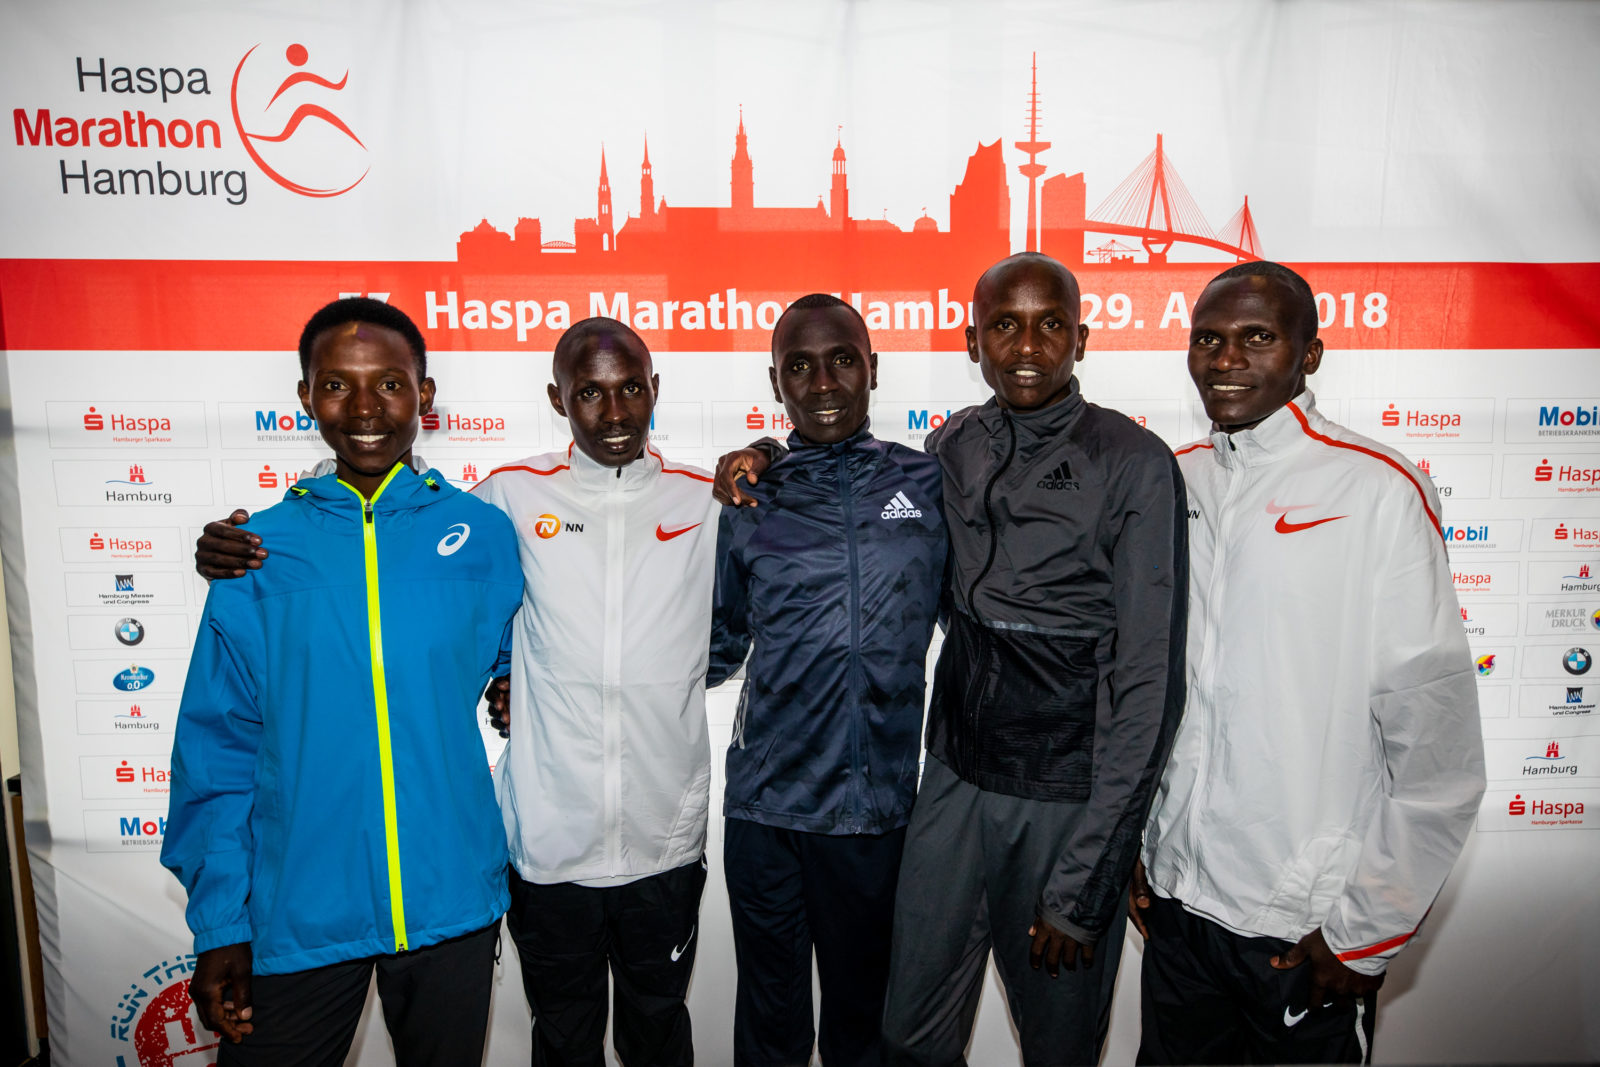 Mutai heads field with five sub 2:06 runners in Hamburg